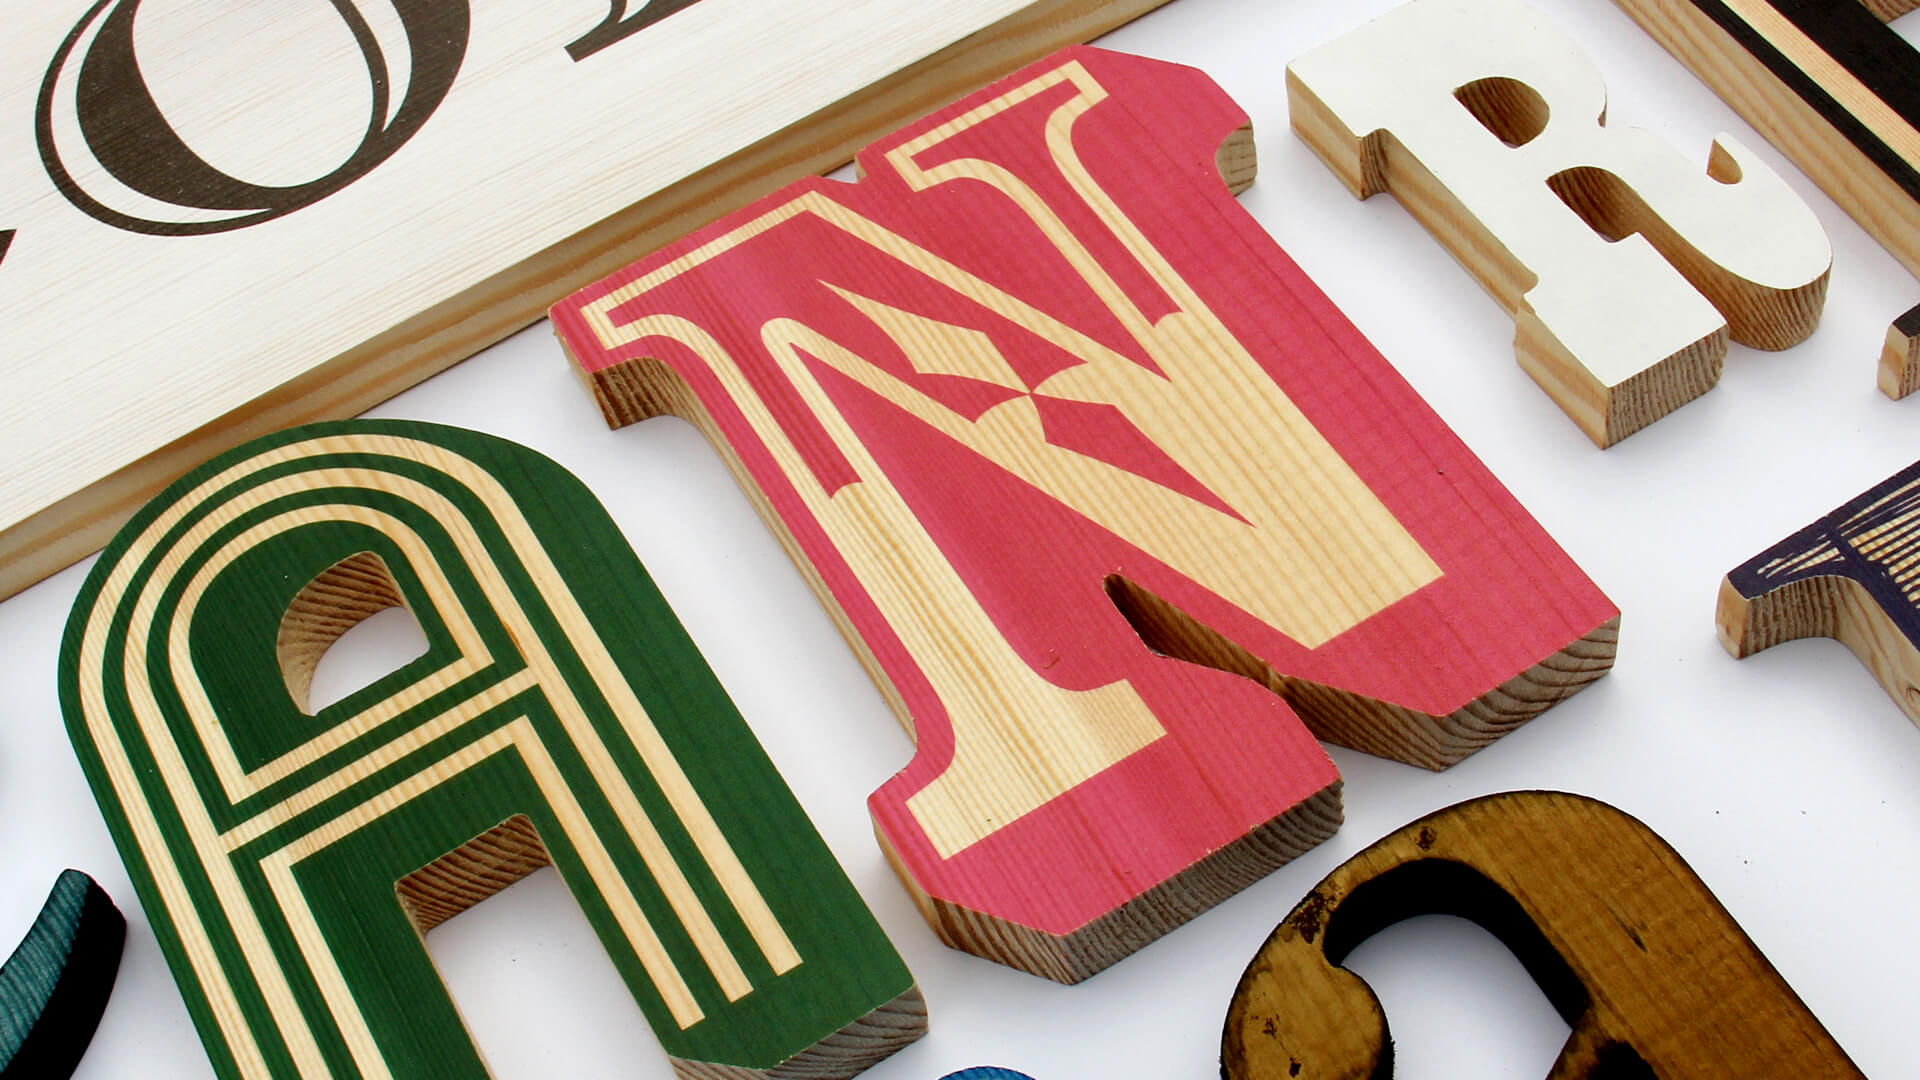 litery-z-drewna - drewno-litery-dekoracyjne-drewniane-litery-litery-z-drewna-wood-letters-decorative-letters